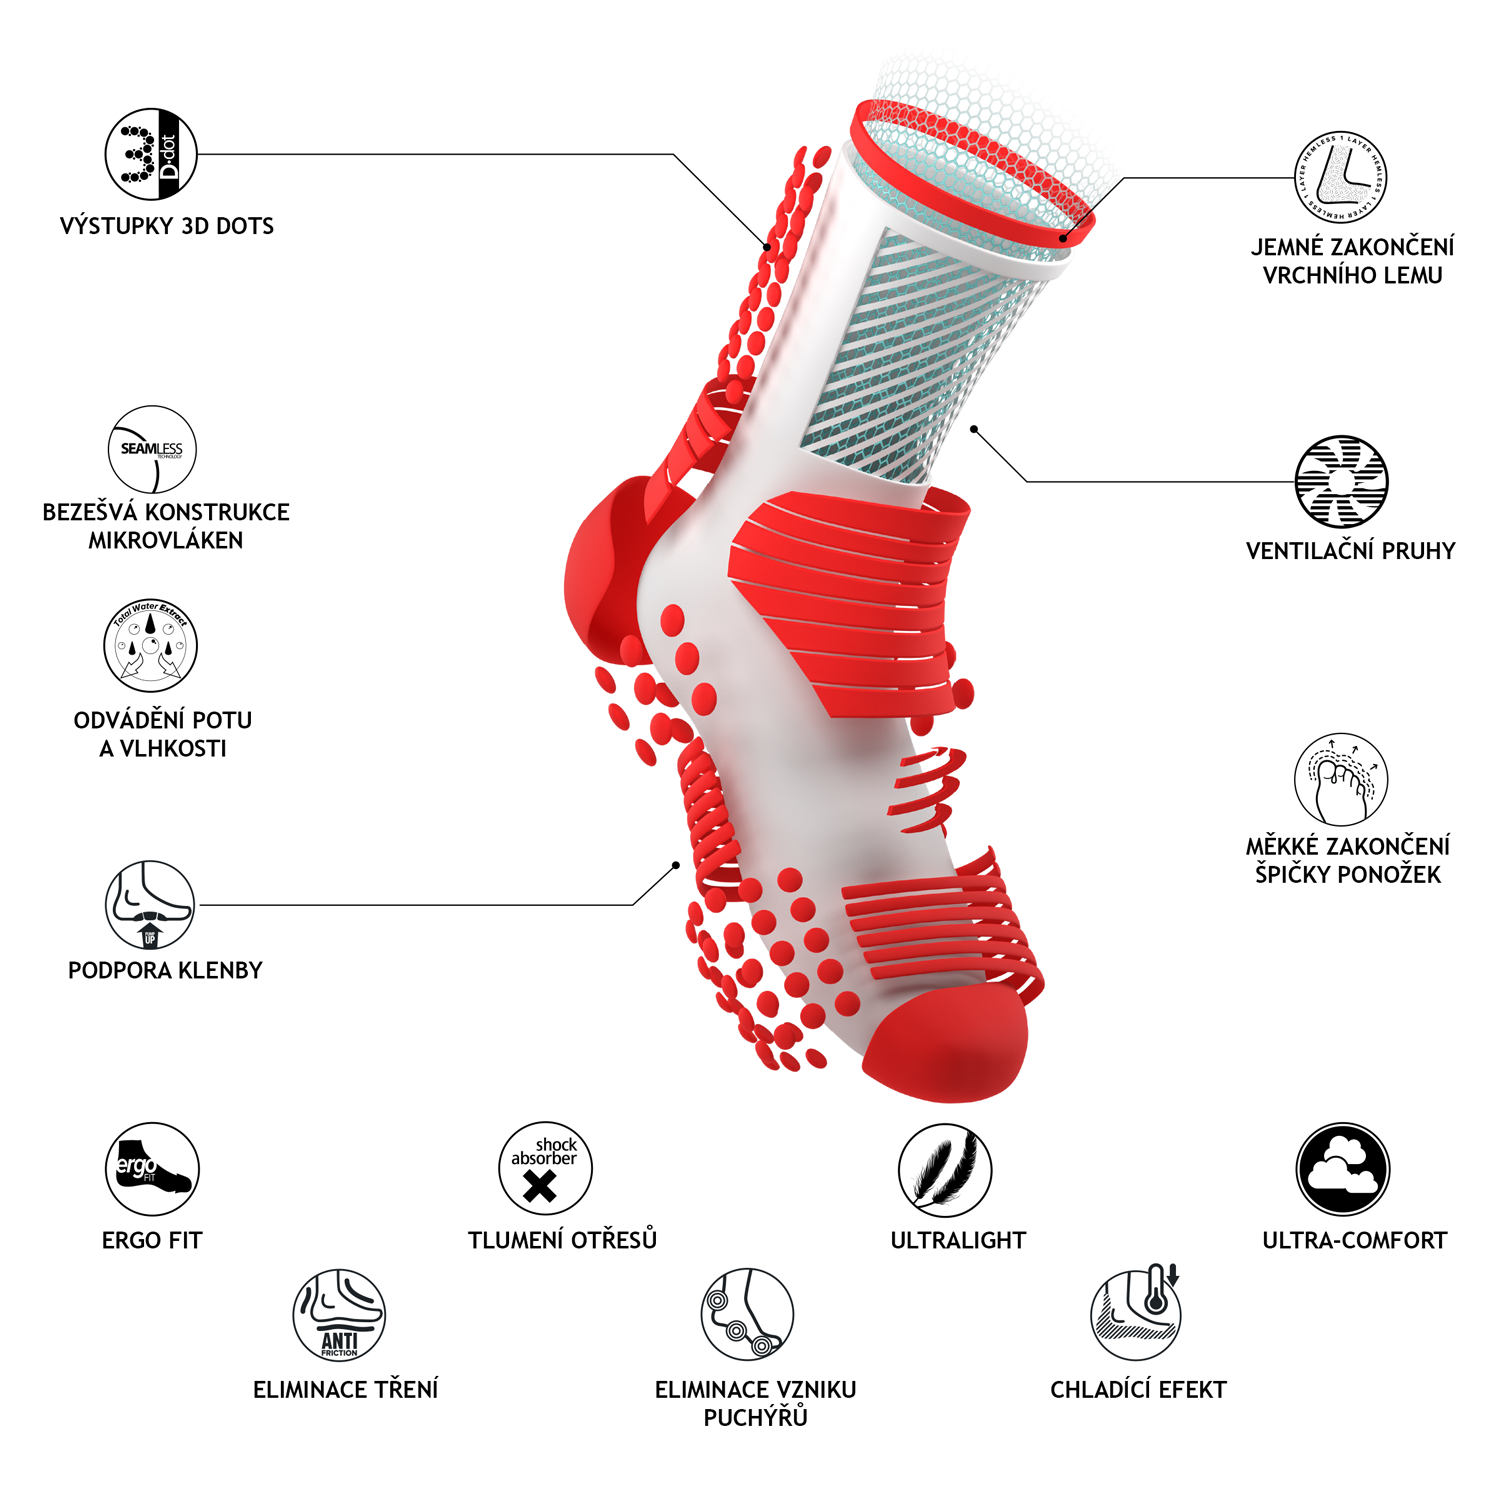 Popis klíčových vlastností ponožek - lemy, ventilační pruhy, měkké zakončení špiček a další vychytávky.